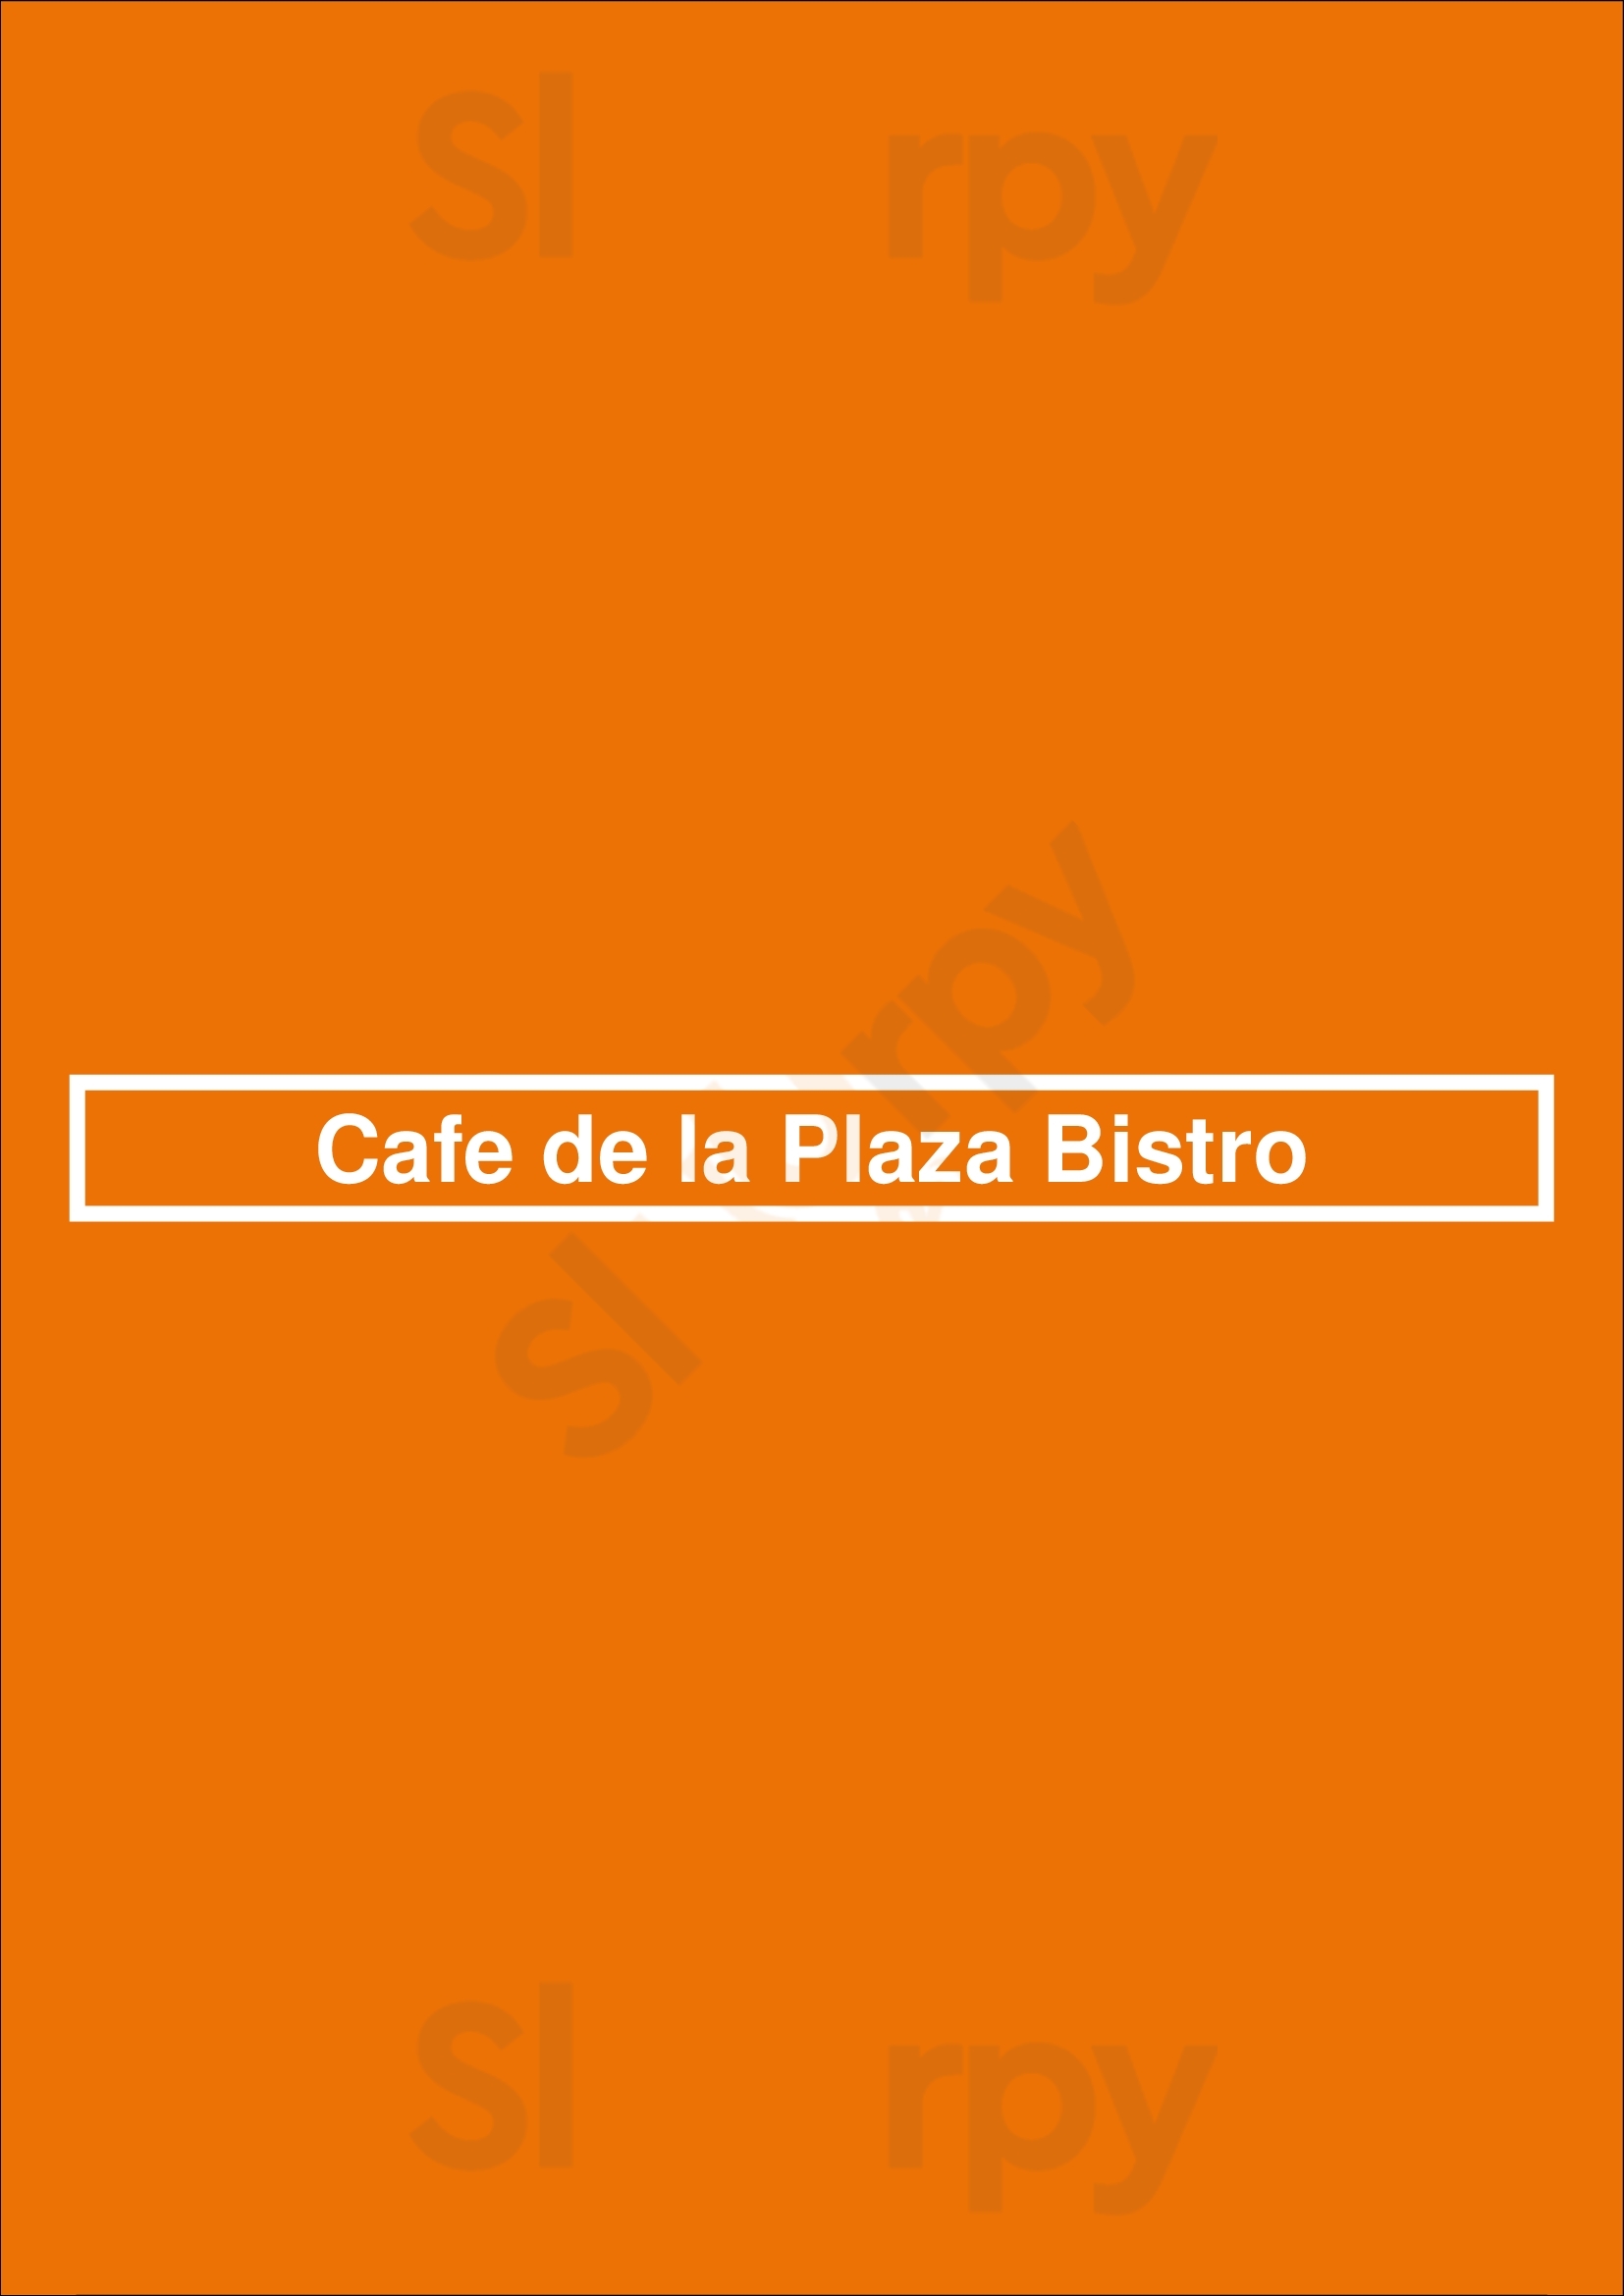 Cafe De La Plaza Bistro Buenos Aires Menu - 1